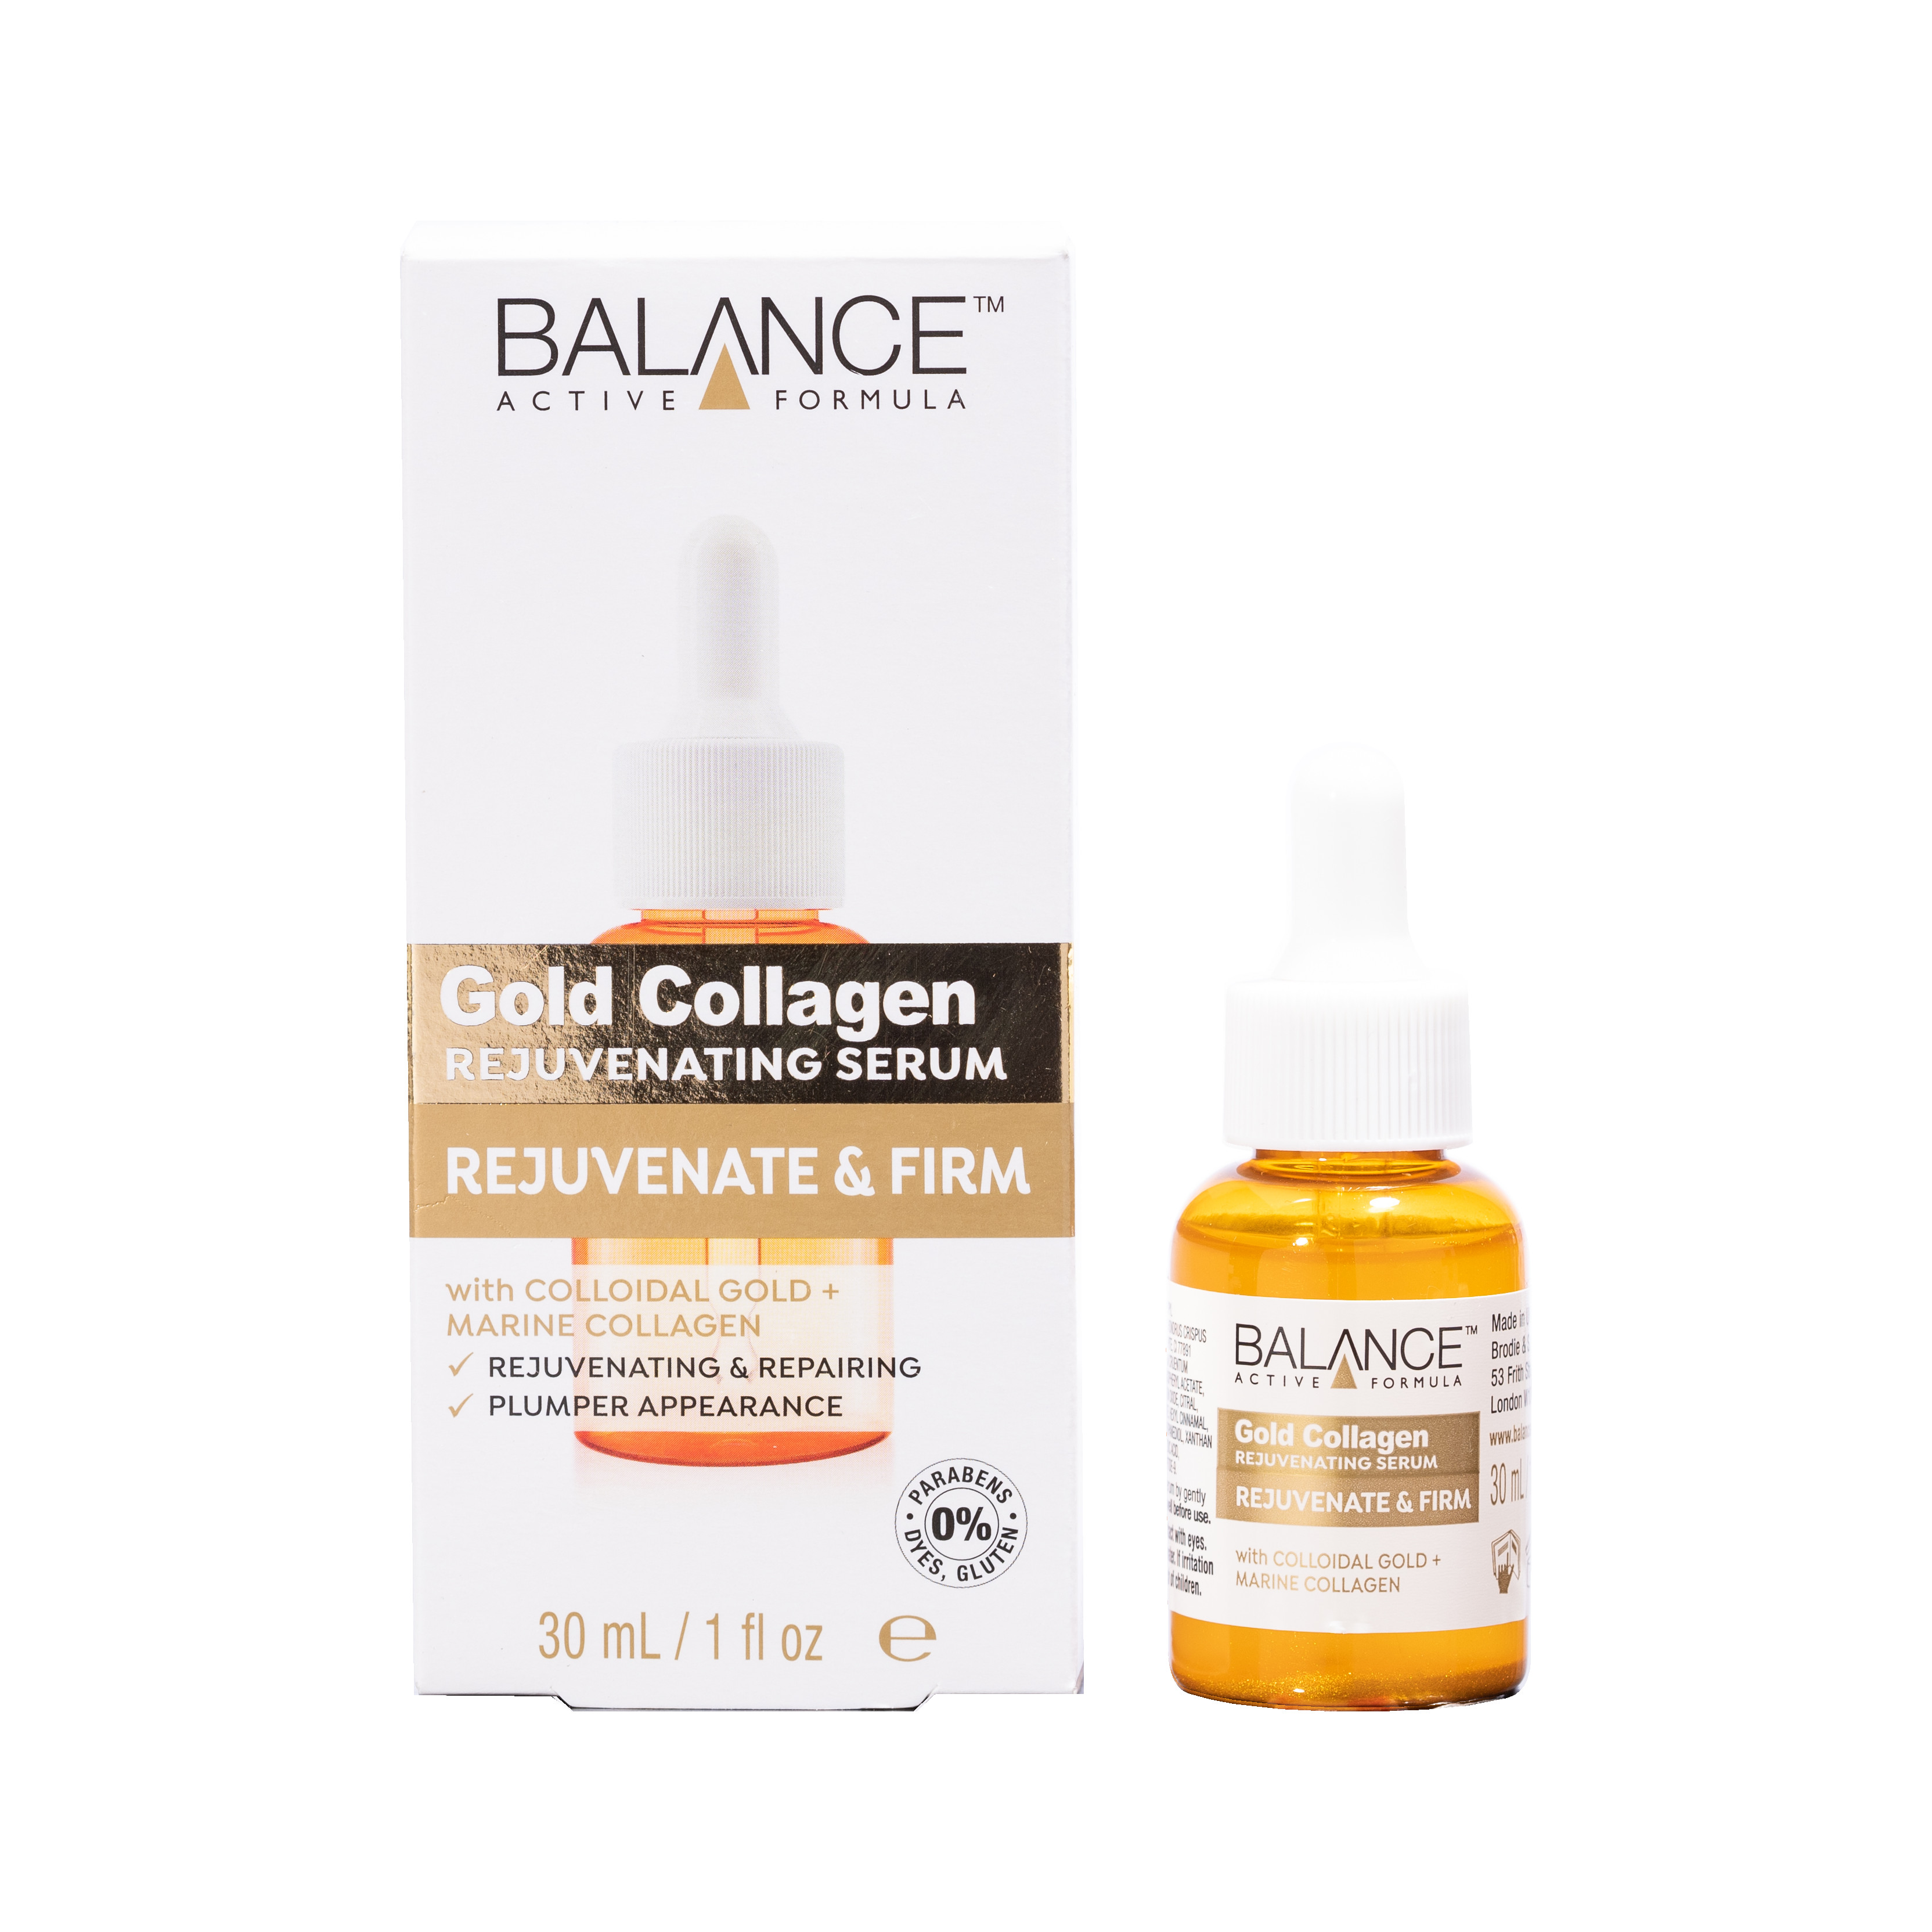 Serum Gold Collagen Balance Active Formula Căng Bóng Làn Da, Chống Lão Hóa, làm sáng da 30ml, hàng chính hãng